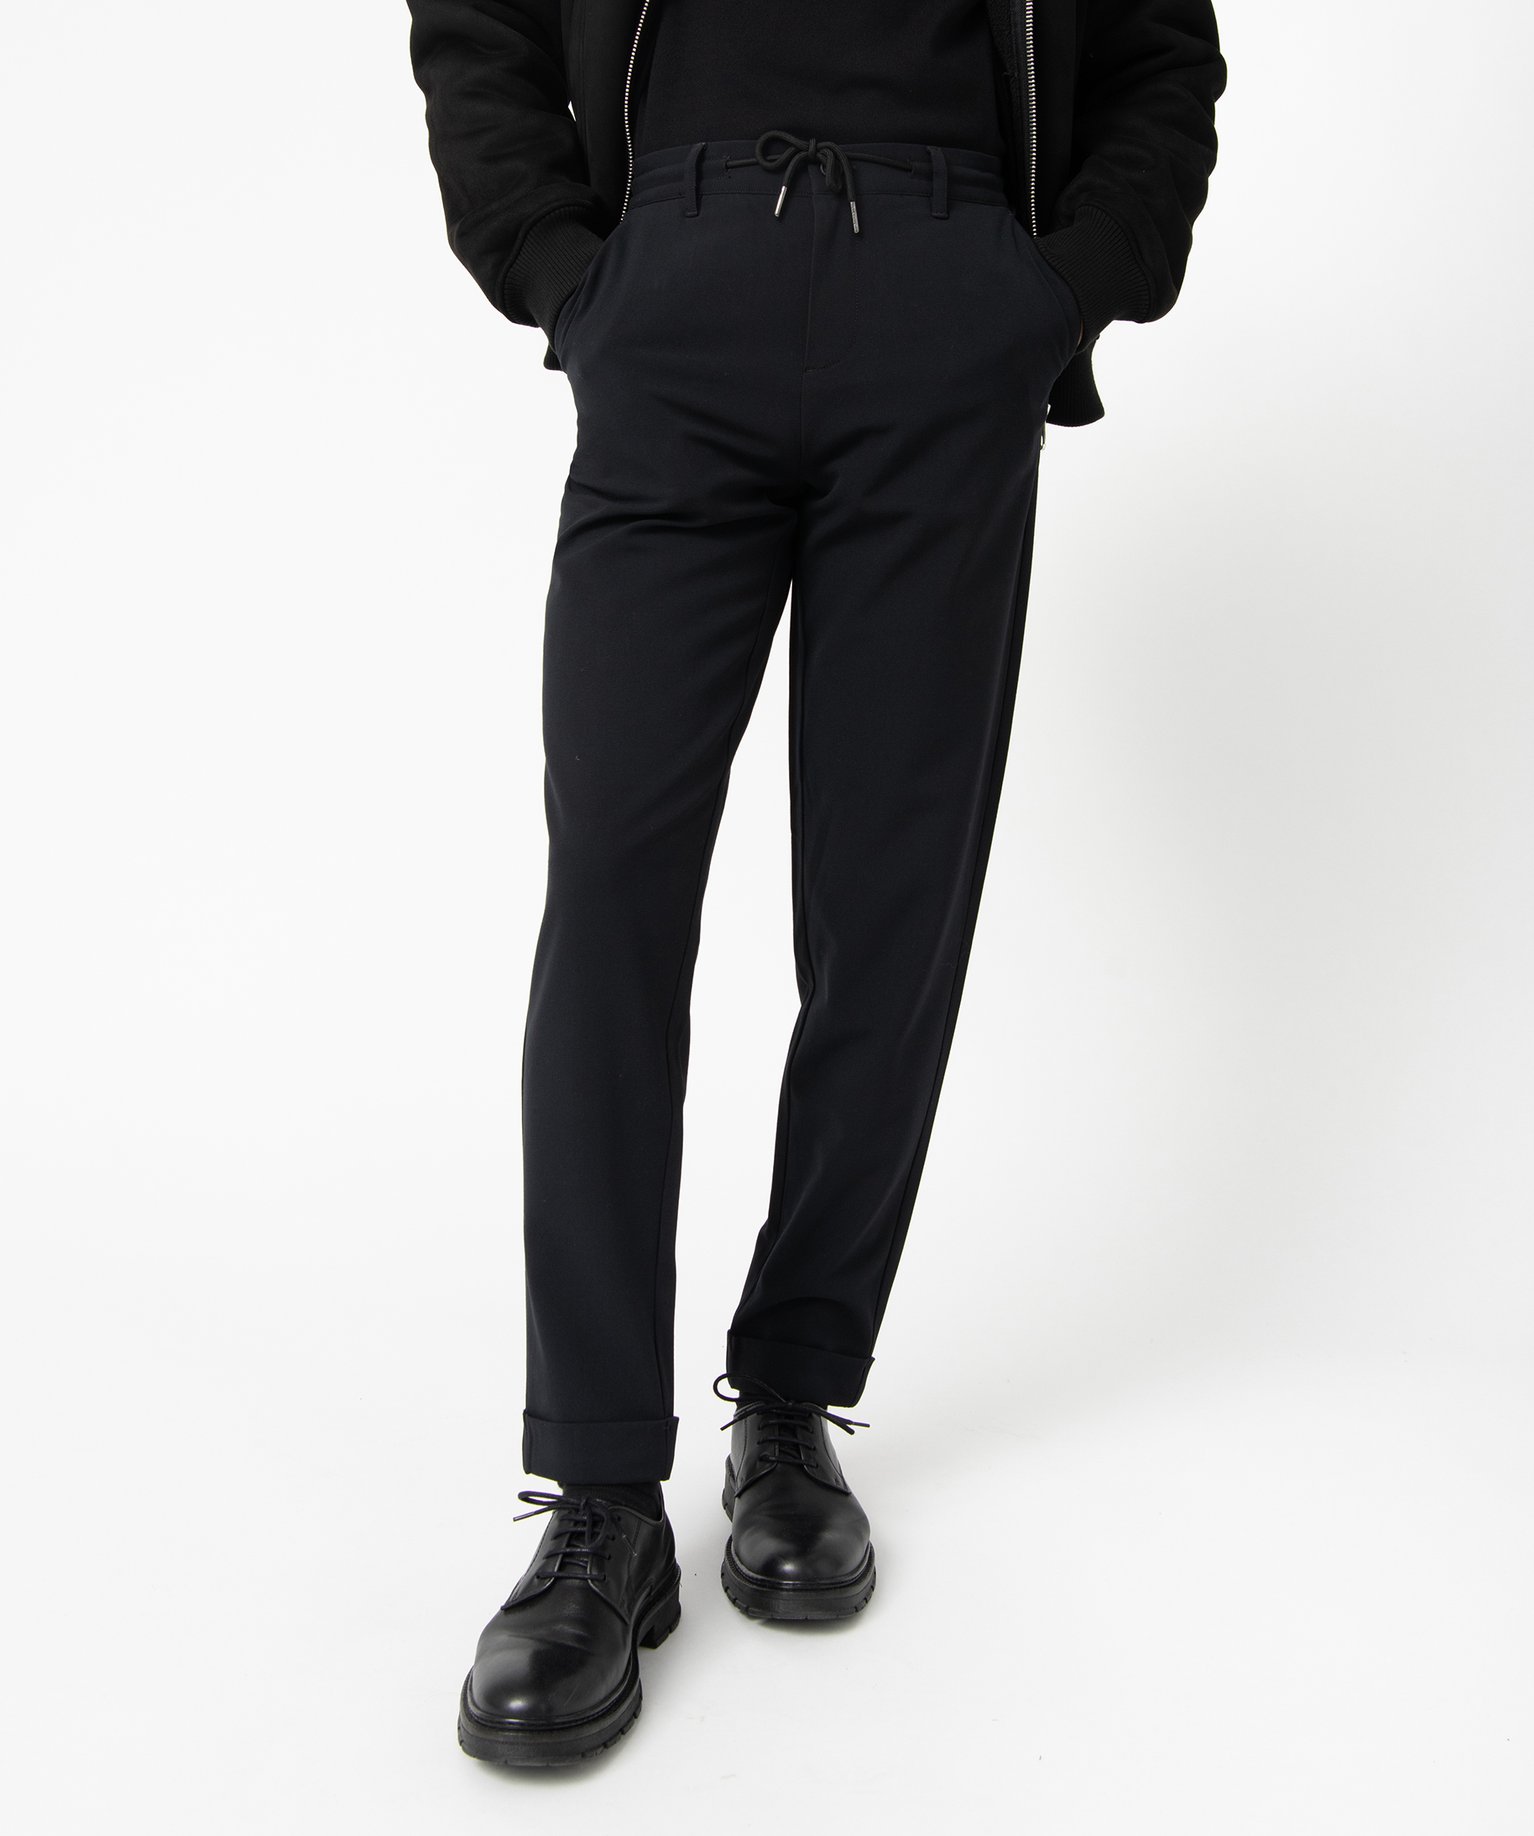 pantalon homme en toile avec taille ajustable noir pantalons promos